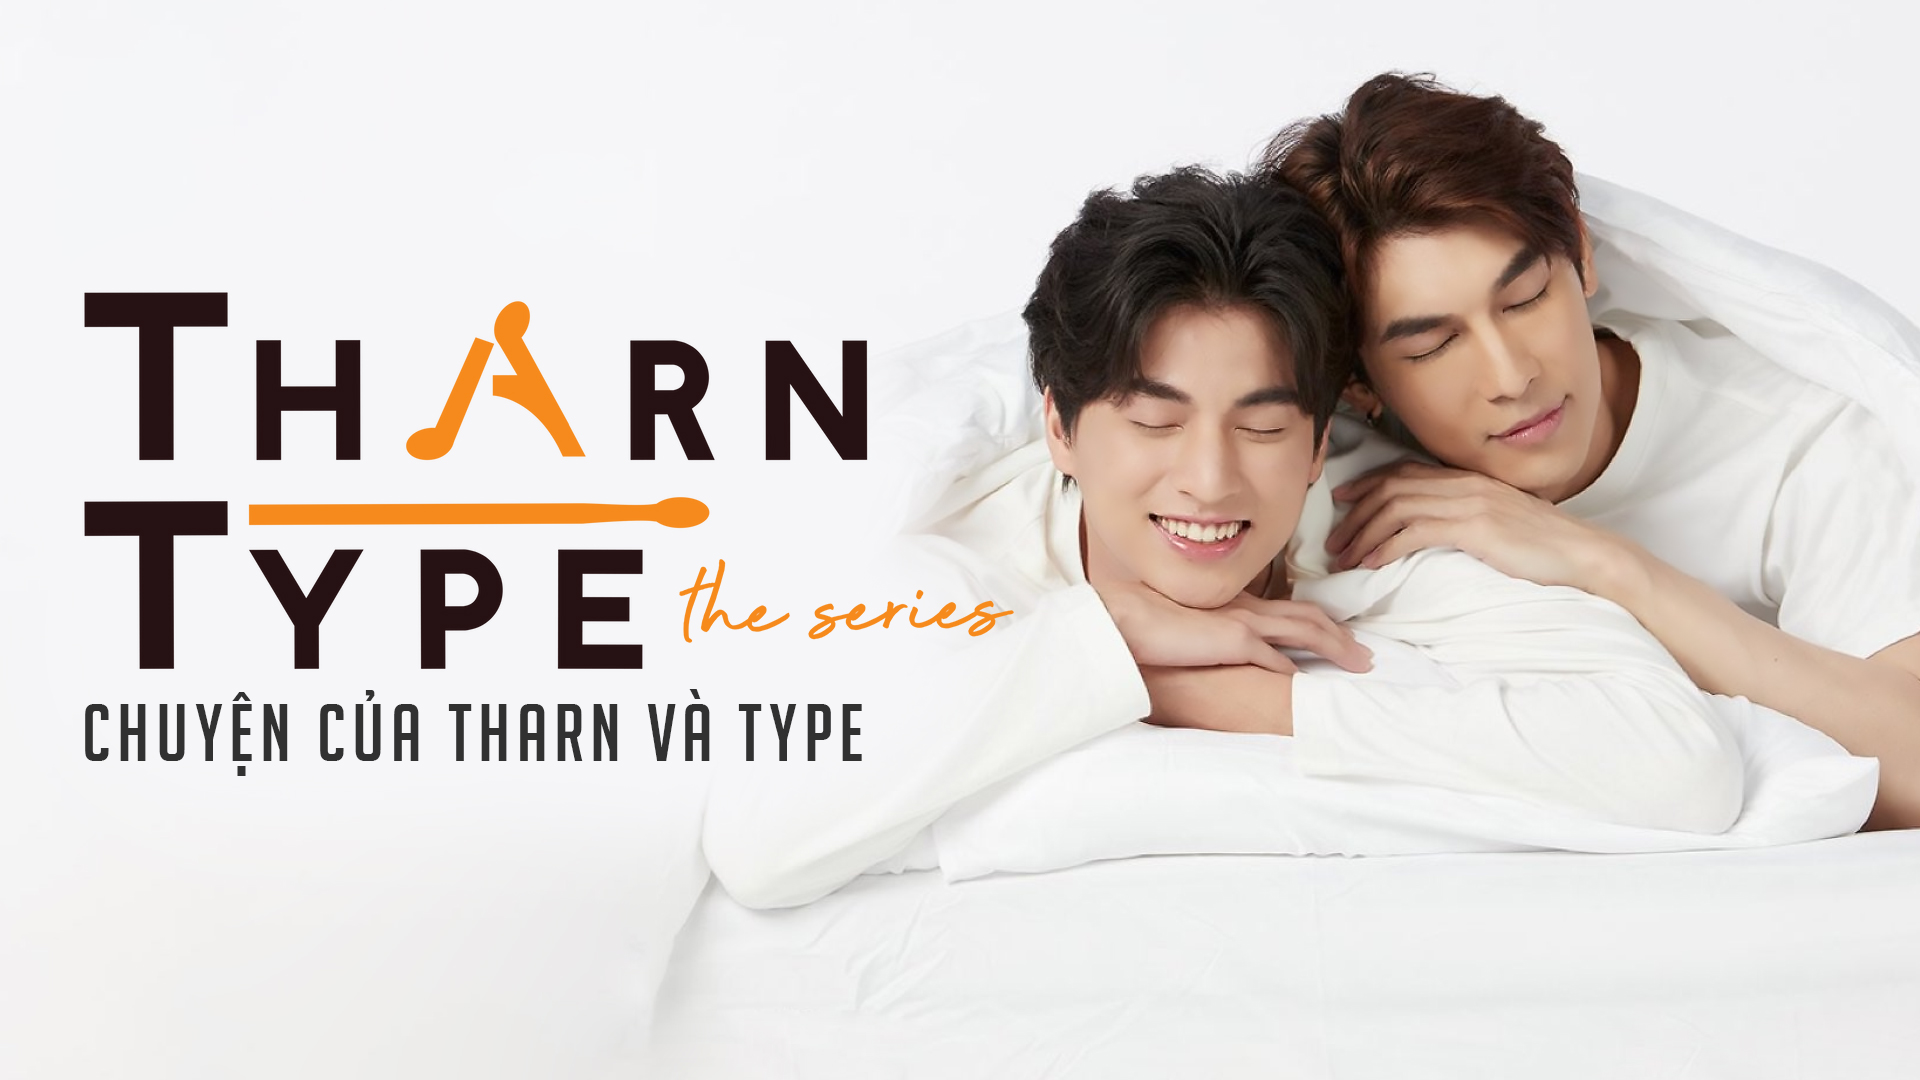 15. Phim TharnType: The Series - TharnType: The Series là một bộ phim truyền hình Thái Lan sản xuất vào năm 2019. Bộ phim dựa trên tiểu thuyết cùng tên của tác giả MAME. TharnType: The Series là một trong những bộ phim đầu tiên của Thái Lan mang đề tài về tình yêu đồng tính nam. Câu chuyện xoay quanh cuộc sống đầy thăng trầm của Tharn và Type, hai chàng trai cùng học cùng sống trong cùng một kí túc xá. Phim đã được đánh giá cao về nội dung lẫn diễn xuất và đã tạo nên hiện tượng trong cộng đồng LGBT Thái Lan.